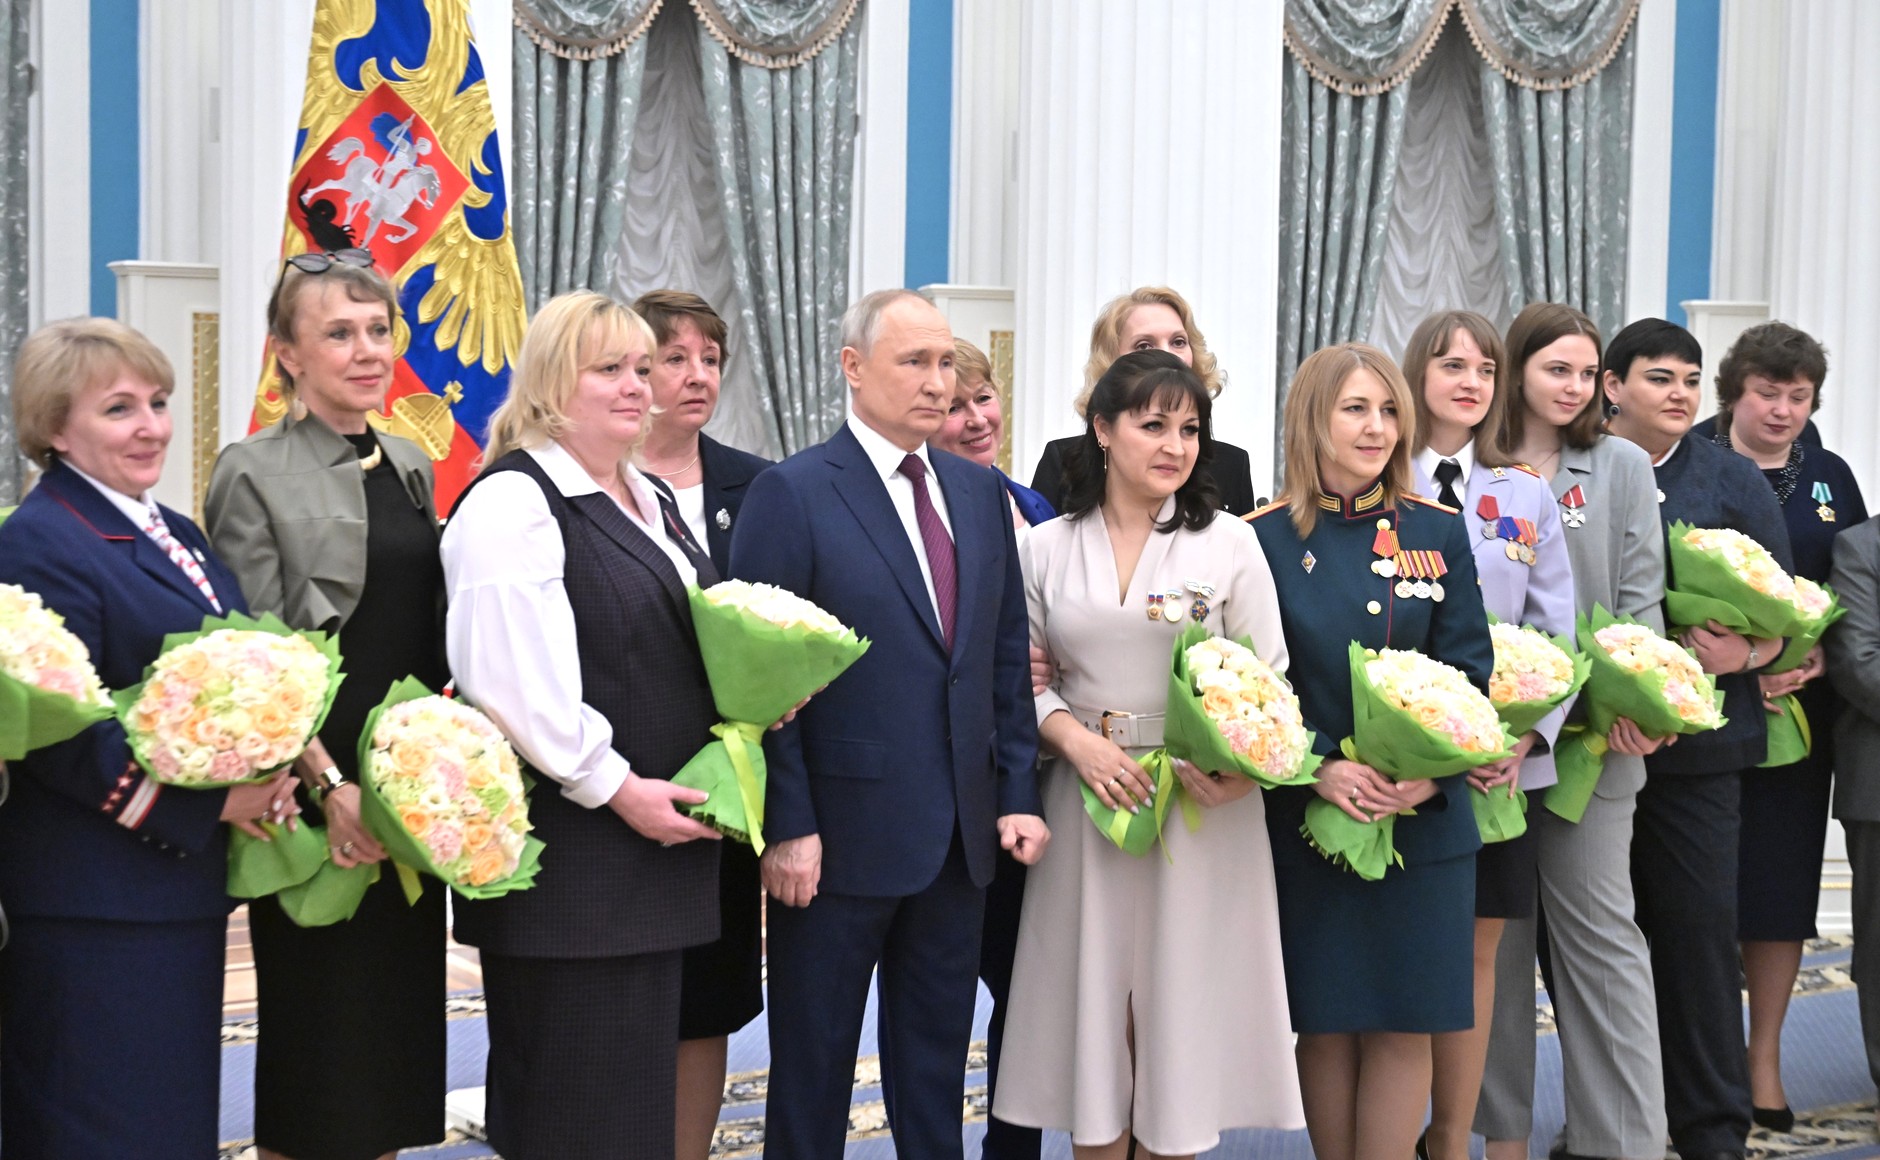 Награждение женской. Награждение женщин в Кремле. Вручение наград. Зал награждения в Кремле.